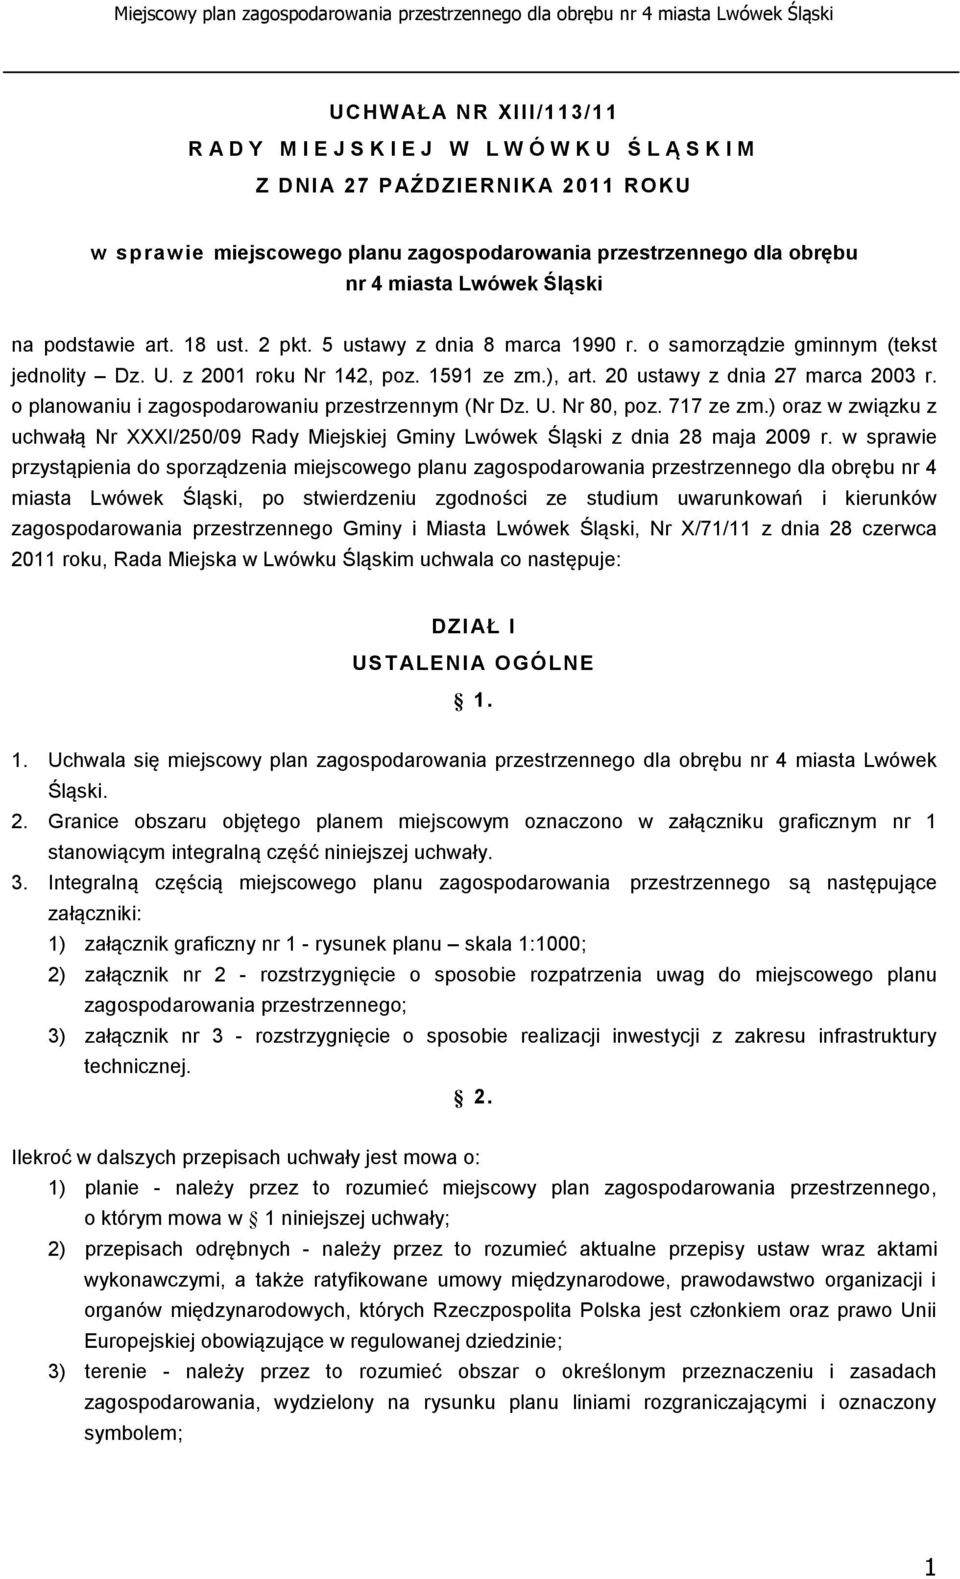 20 ustawy z dnia 27 marca 2003 r. o planowaniu i zagospodarowaniu przestrzennym (Nr Dz. U. Nr 80, poz. 717 ze zm.